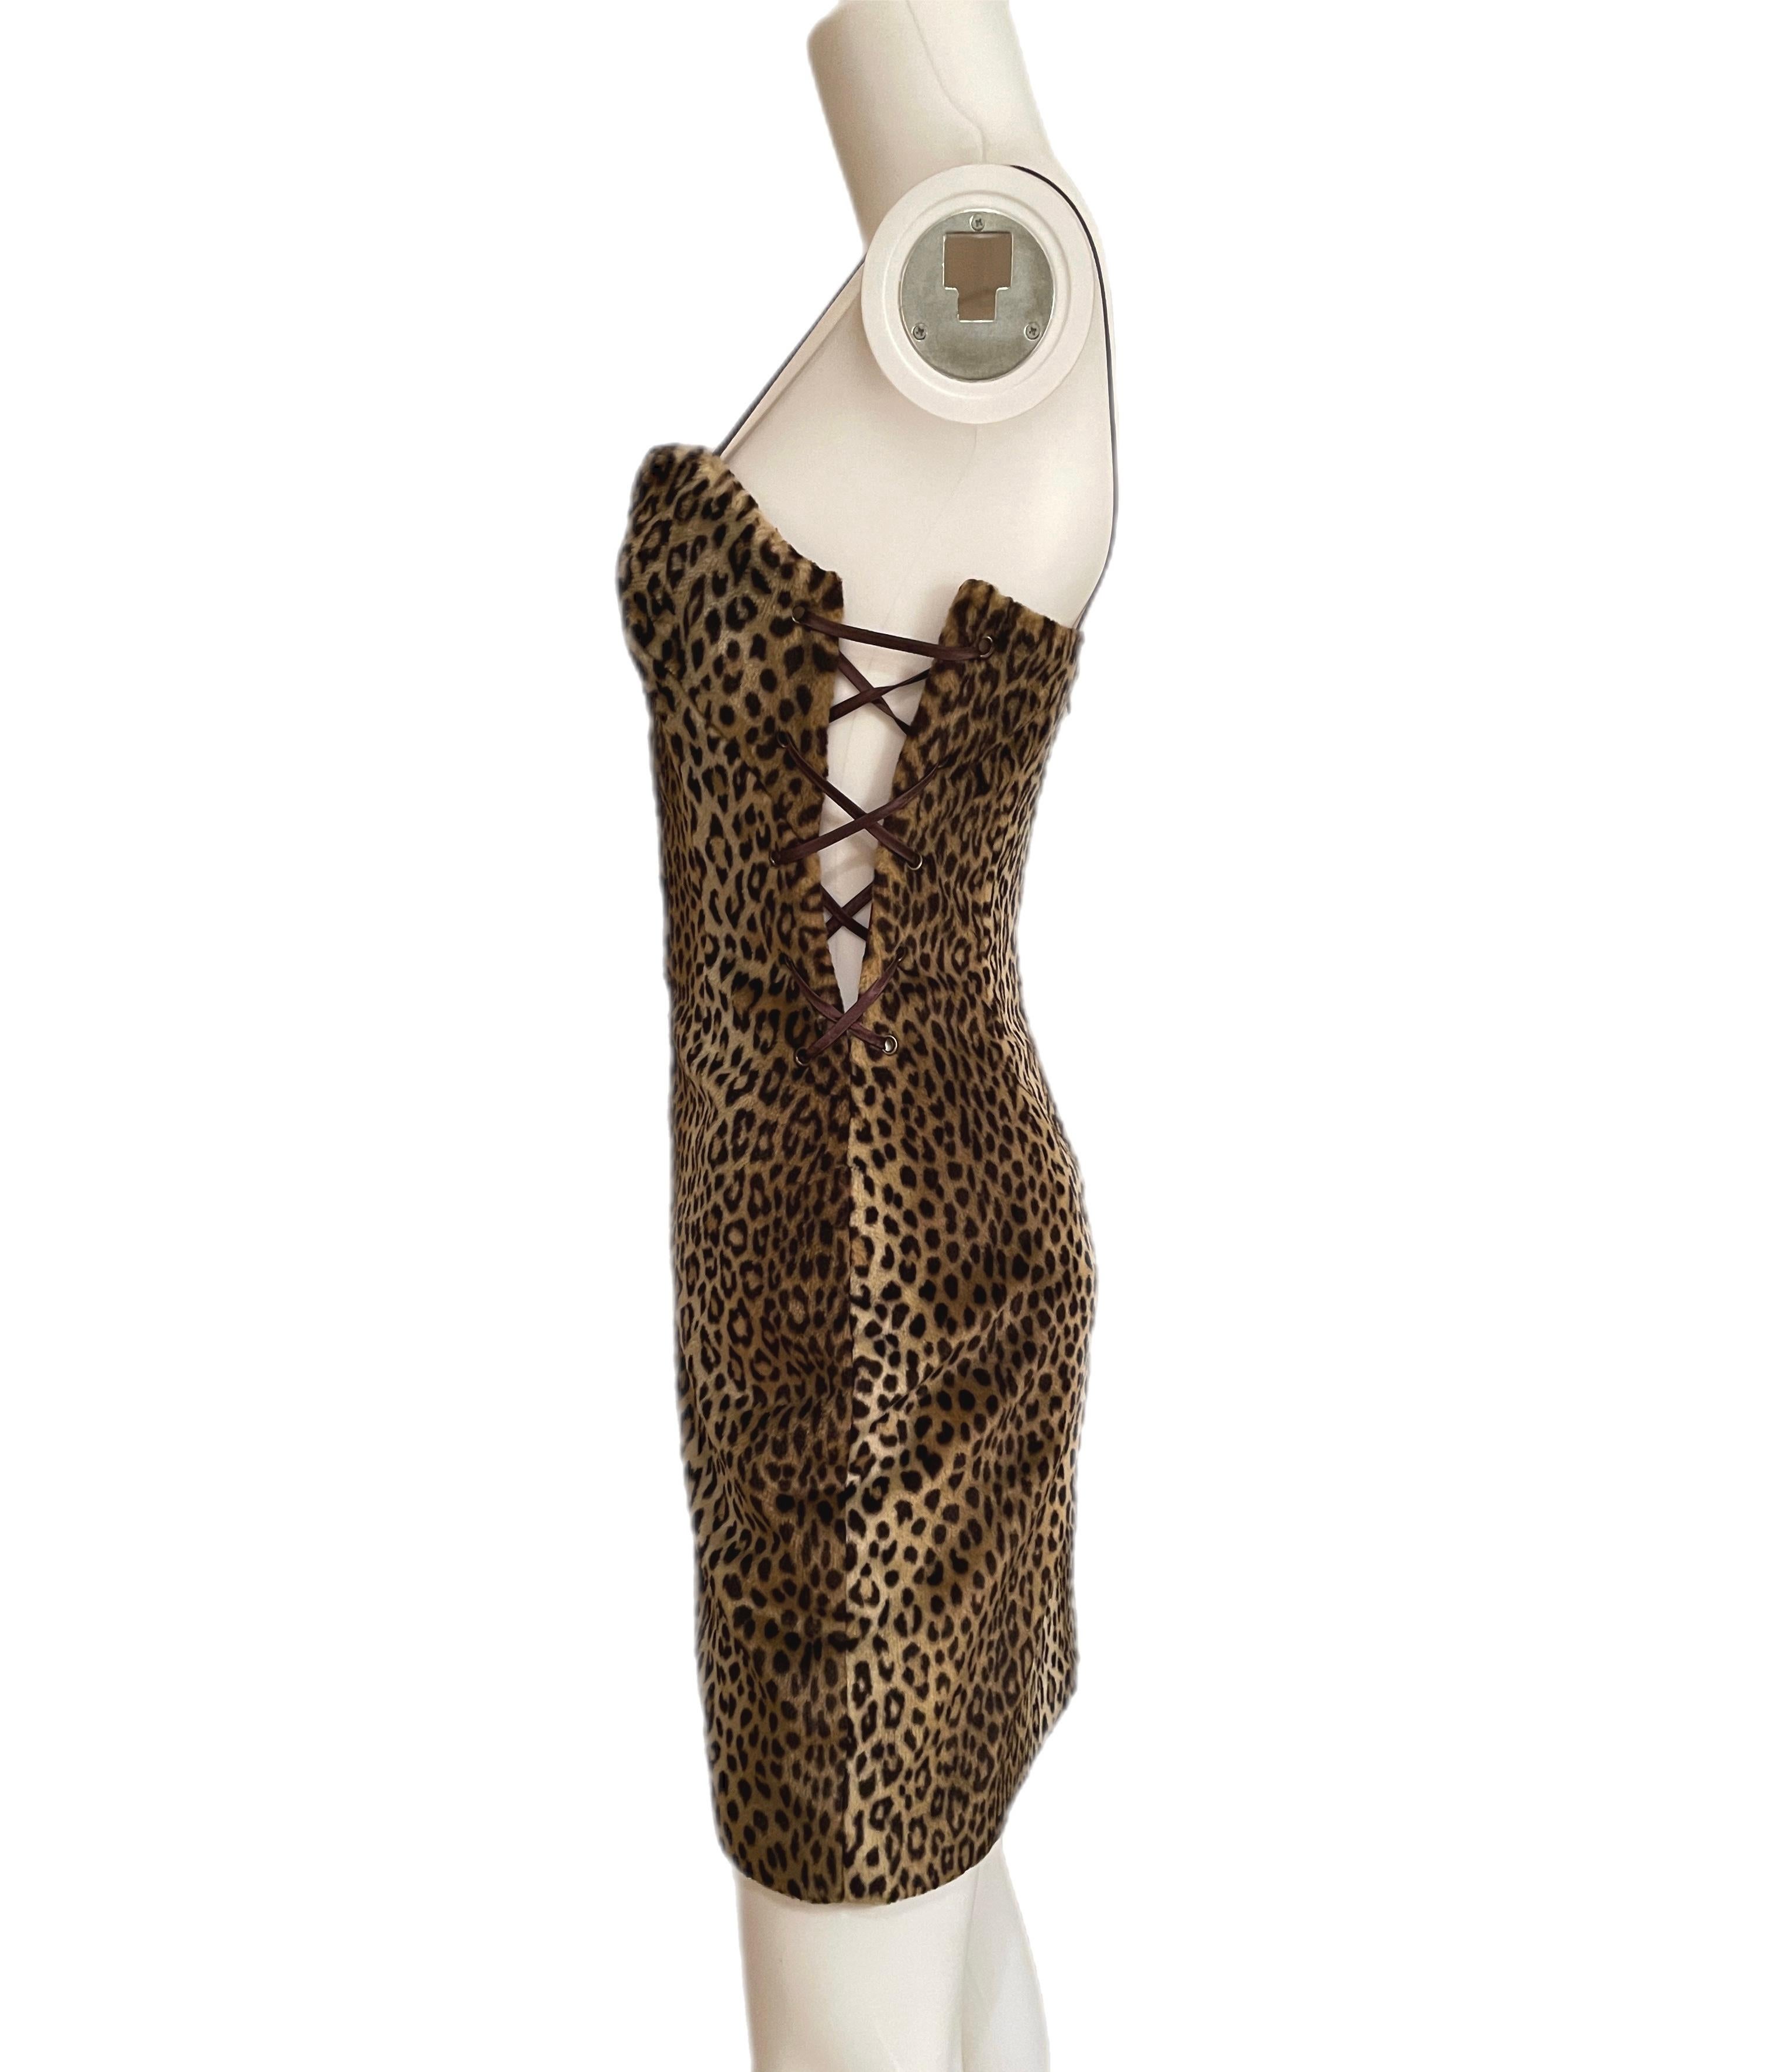 Women's YVES SAINT LAURENT leopard corset lace up mini dress vintage